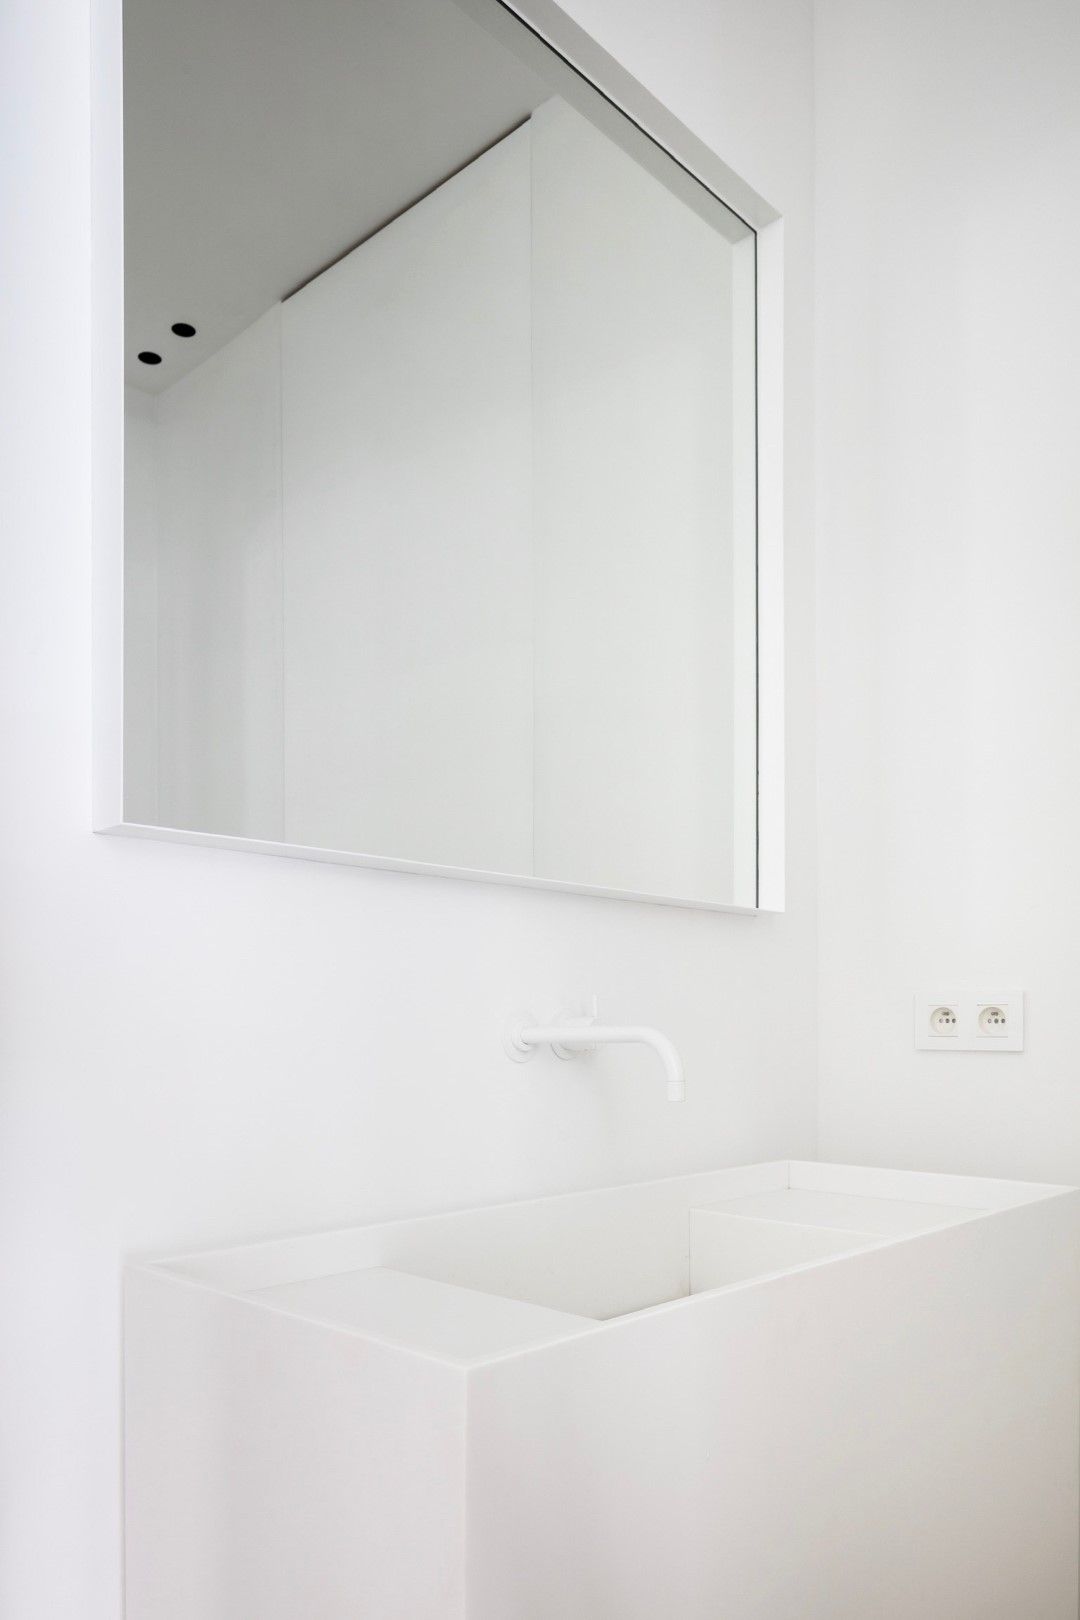 Stalen spiegel ge poedercoat wit staal strakke badkamer inrichting